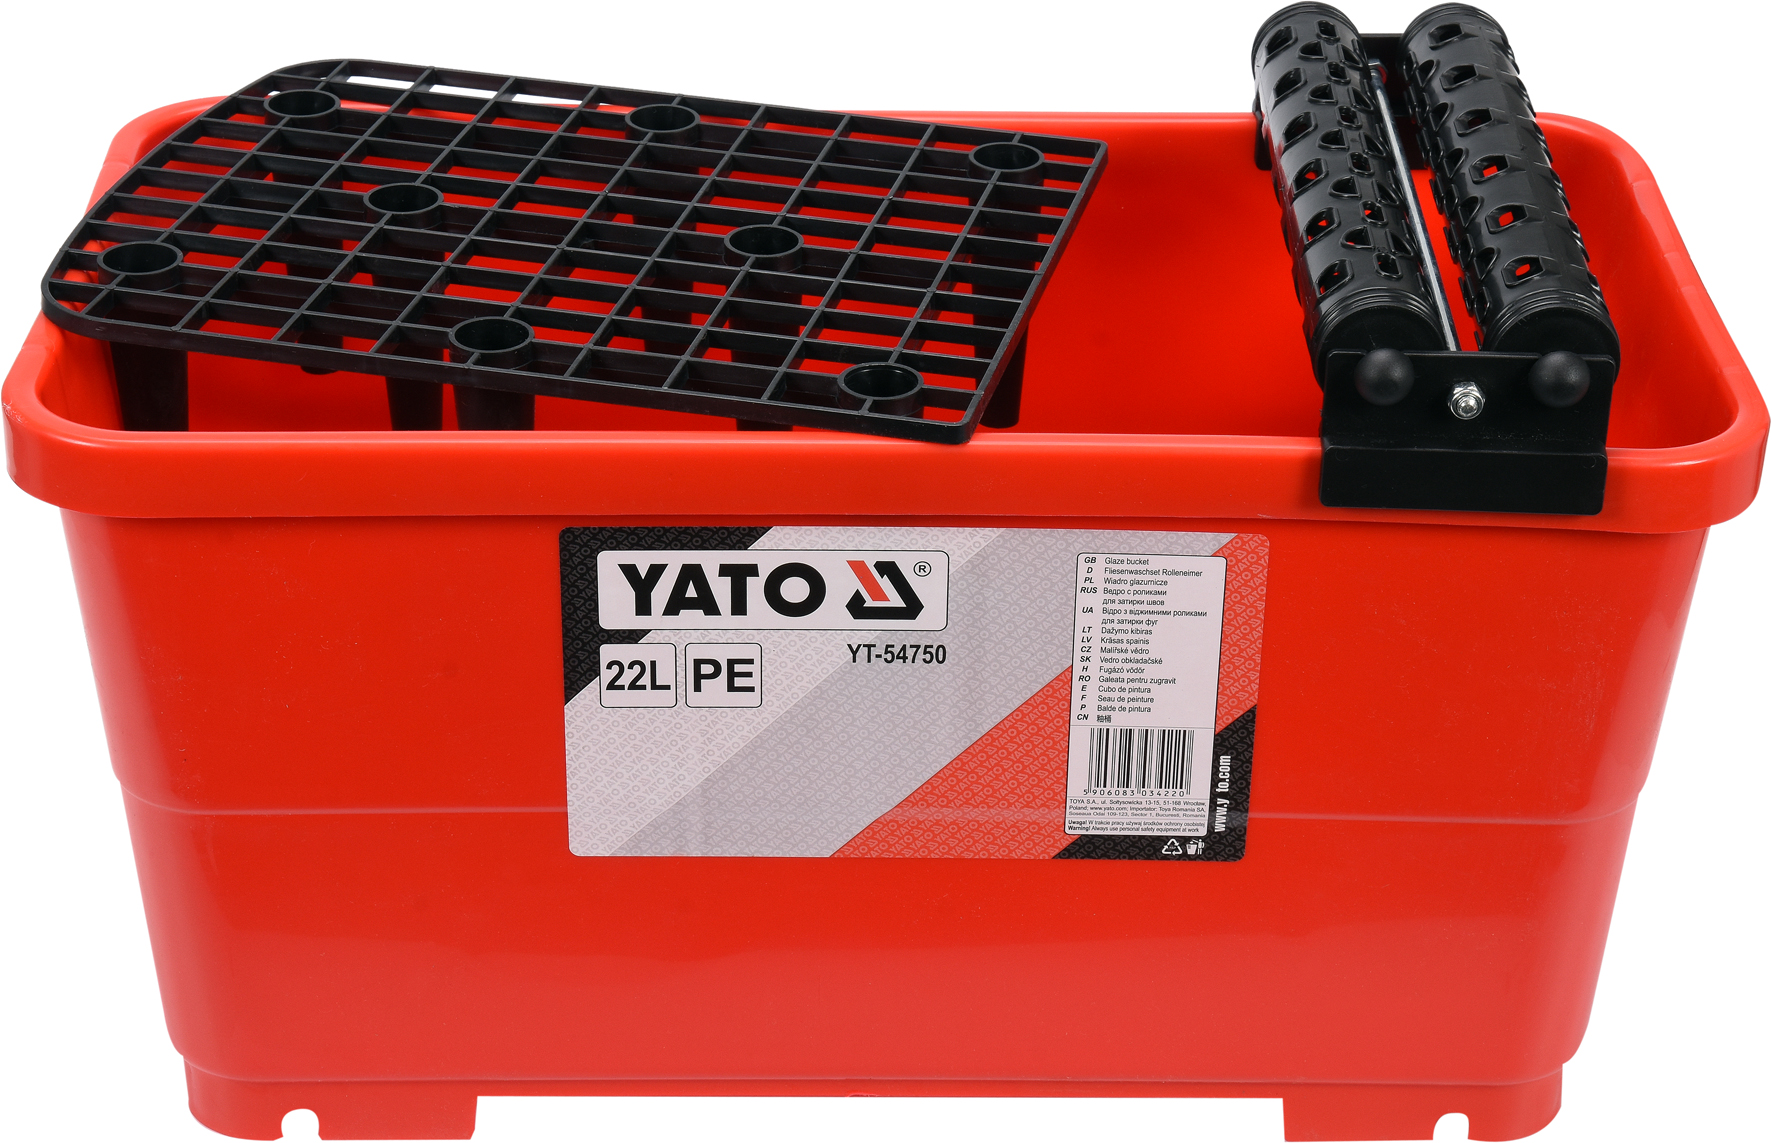 Ведро пластиковое Yato с валами и решеткой, 22л, для плиточных работ